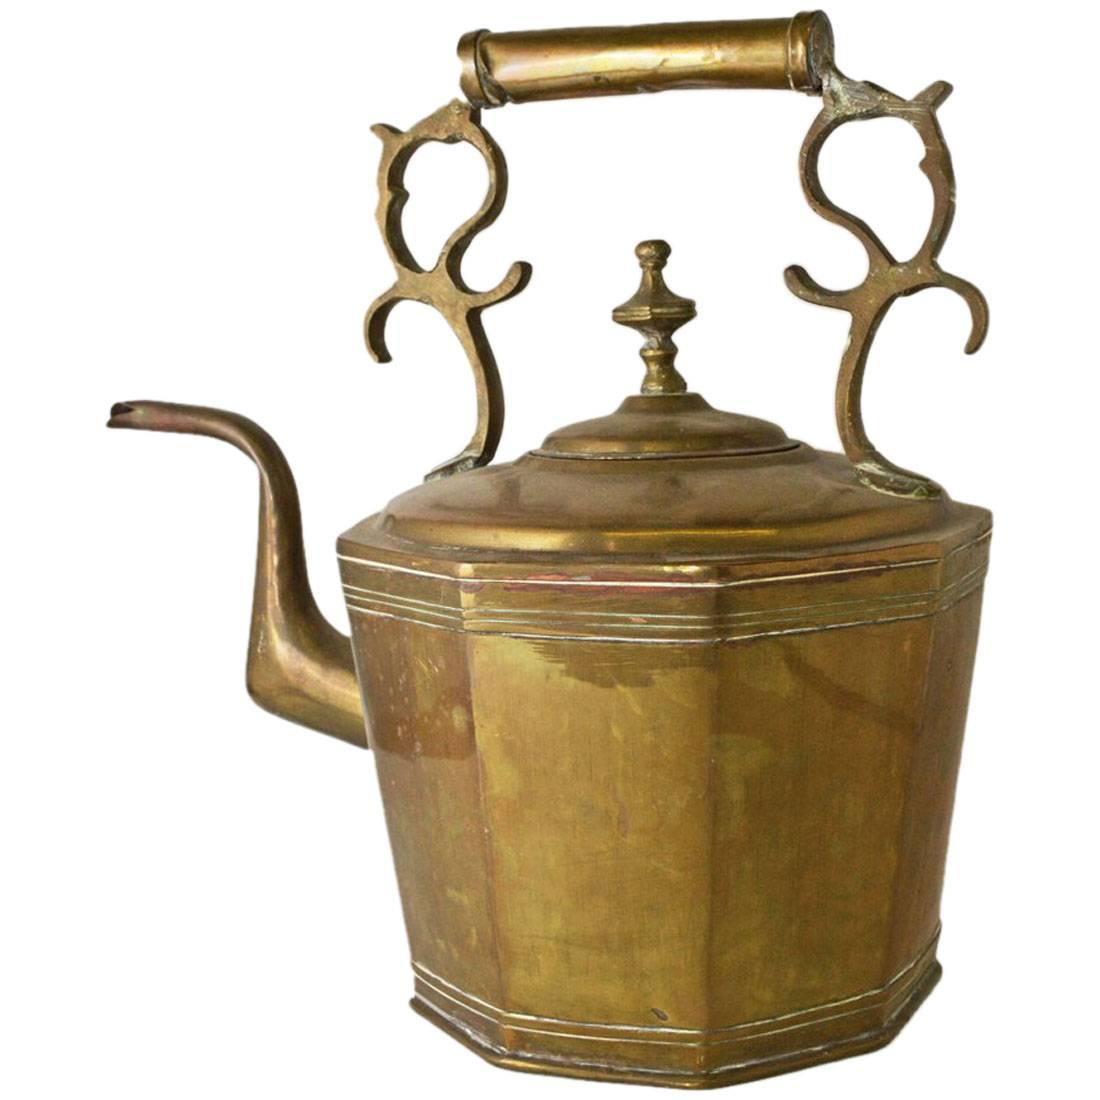 Antique European Brass Kettle or Teapot